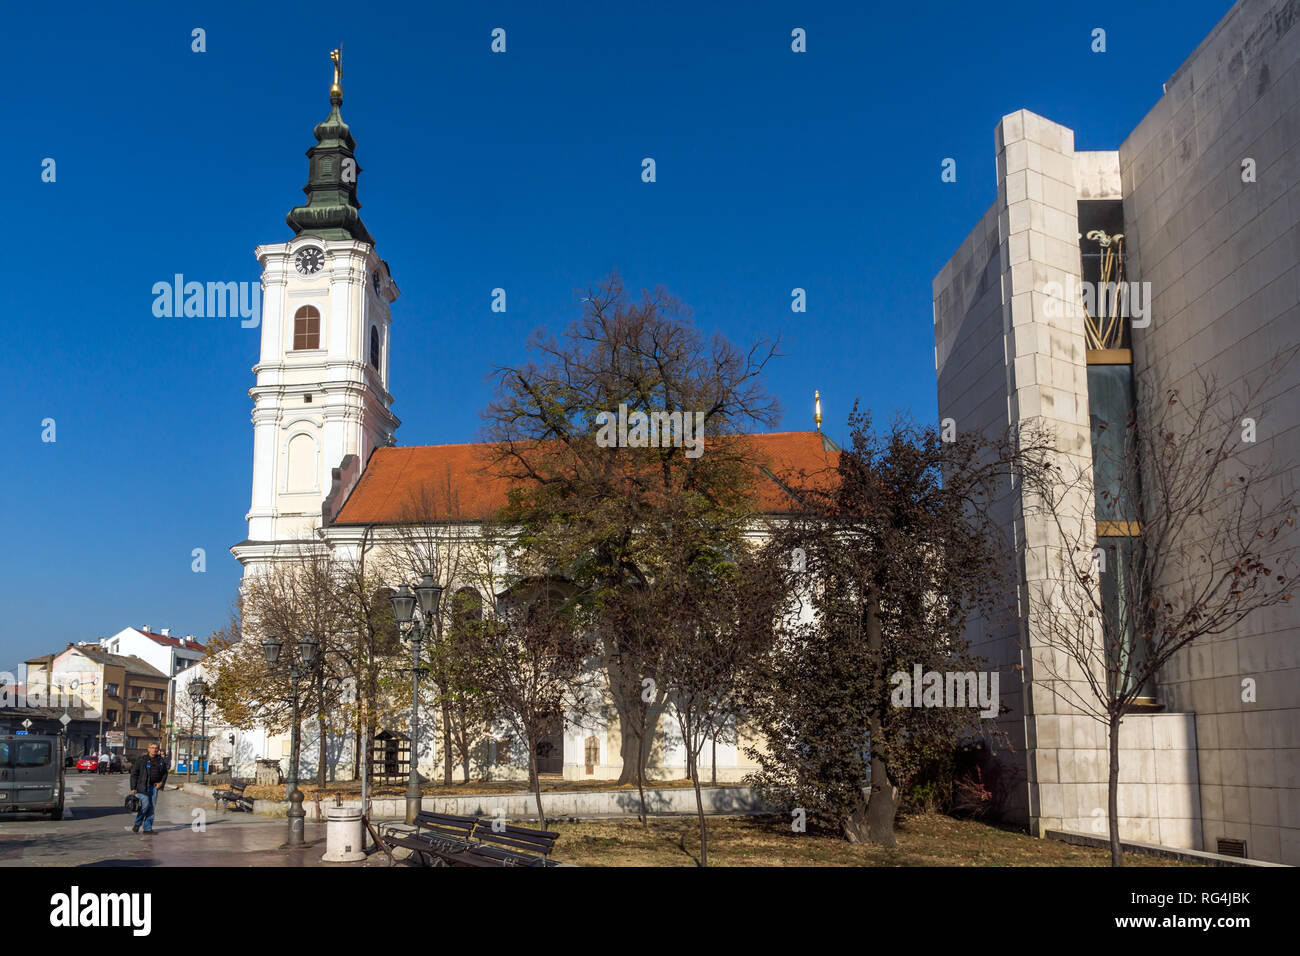 NOVI SAD, VOJVODINA, SERBIA - NOVEMBER 11, 2018: Orthodox Church of Holy Mother's Ascension in City of Novi Sad, Vojvodina, Serbia Stock Photo